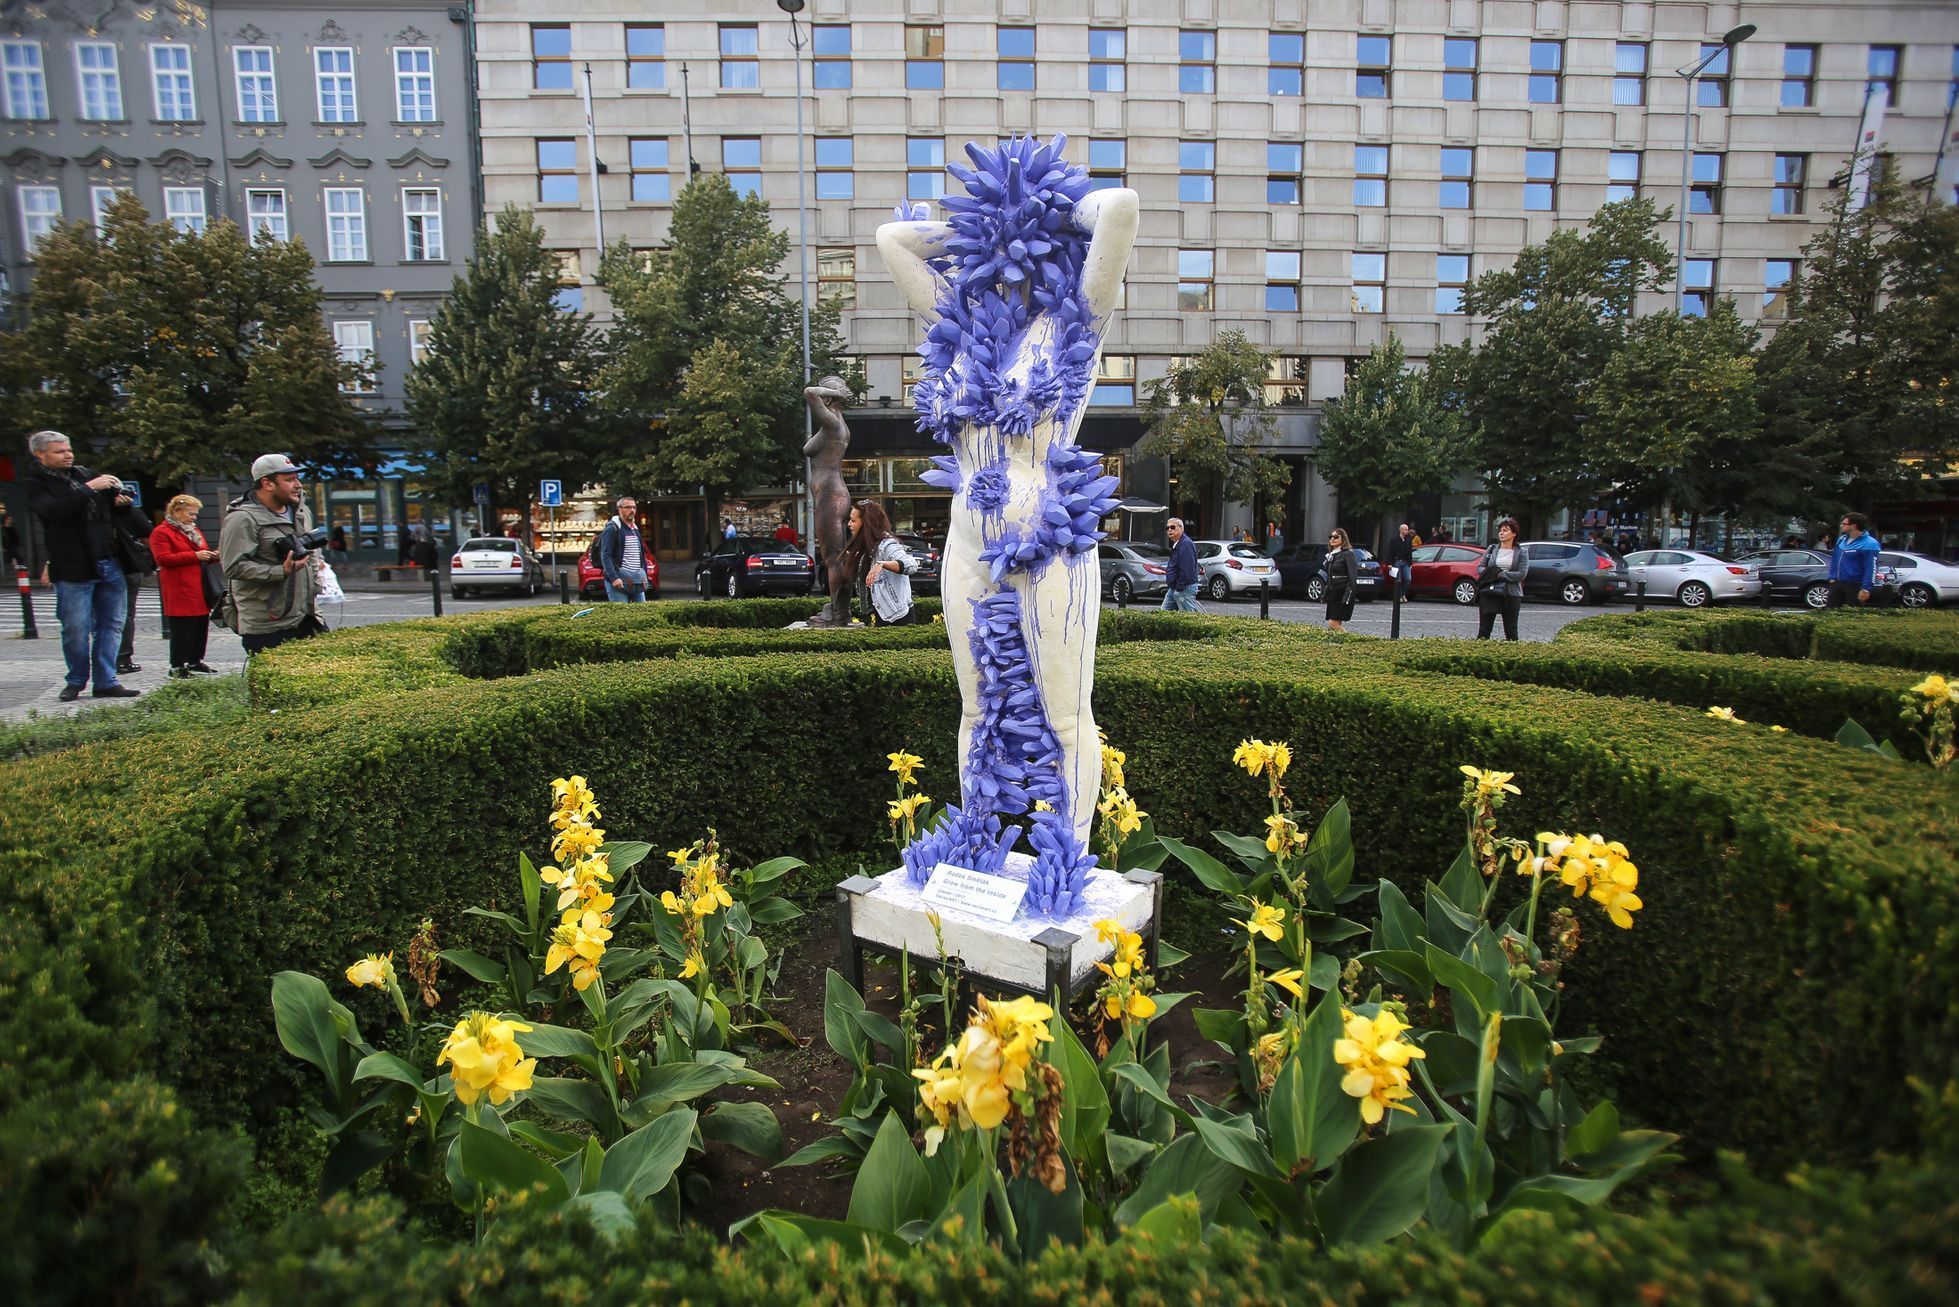 VáclavArt - Výstava soch na Václavském náměstí od studentů AVU